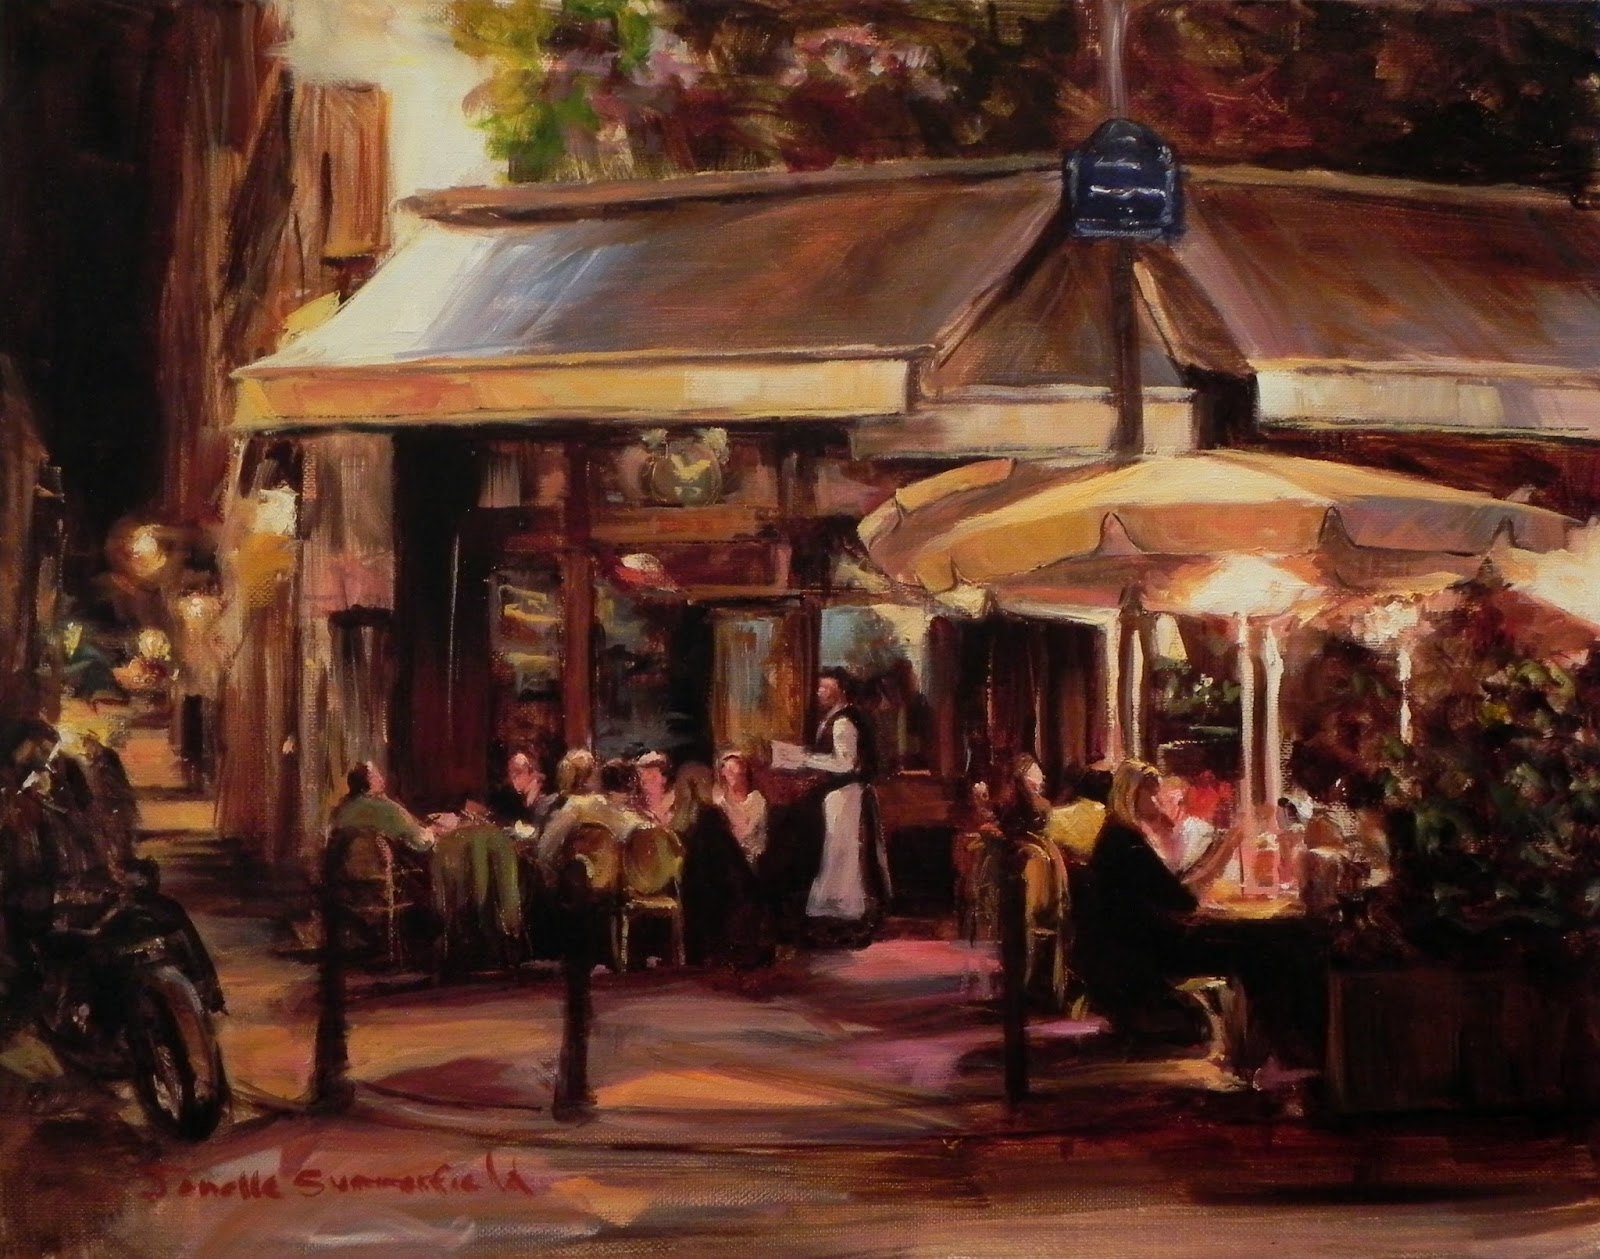 Jonelle Summerfield Oil Paintings: Sidewalk Cafe at Night in Paris